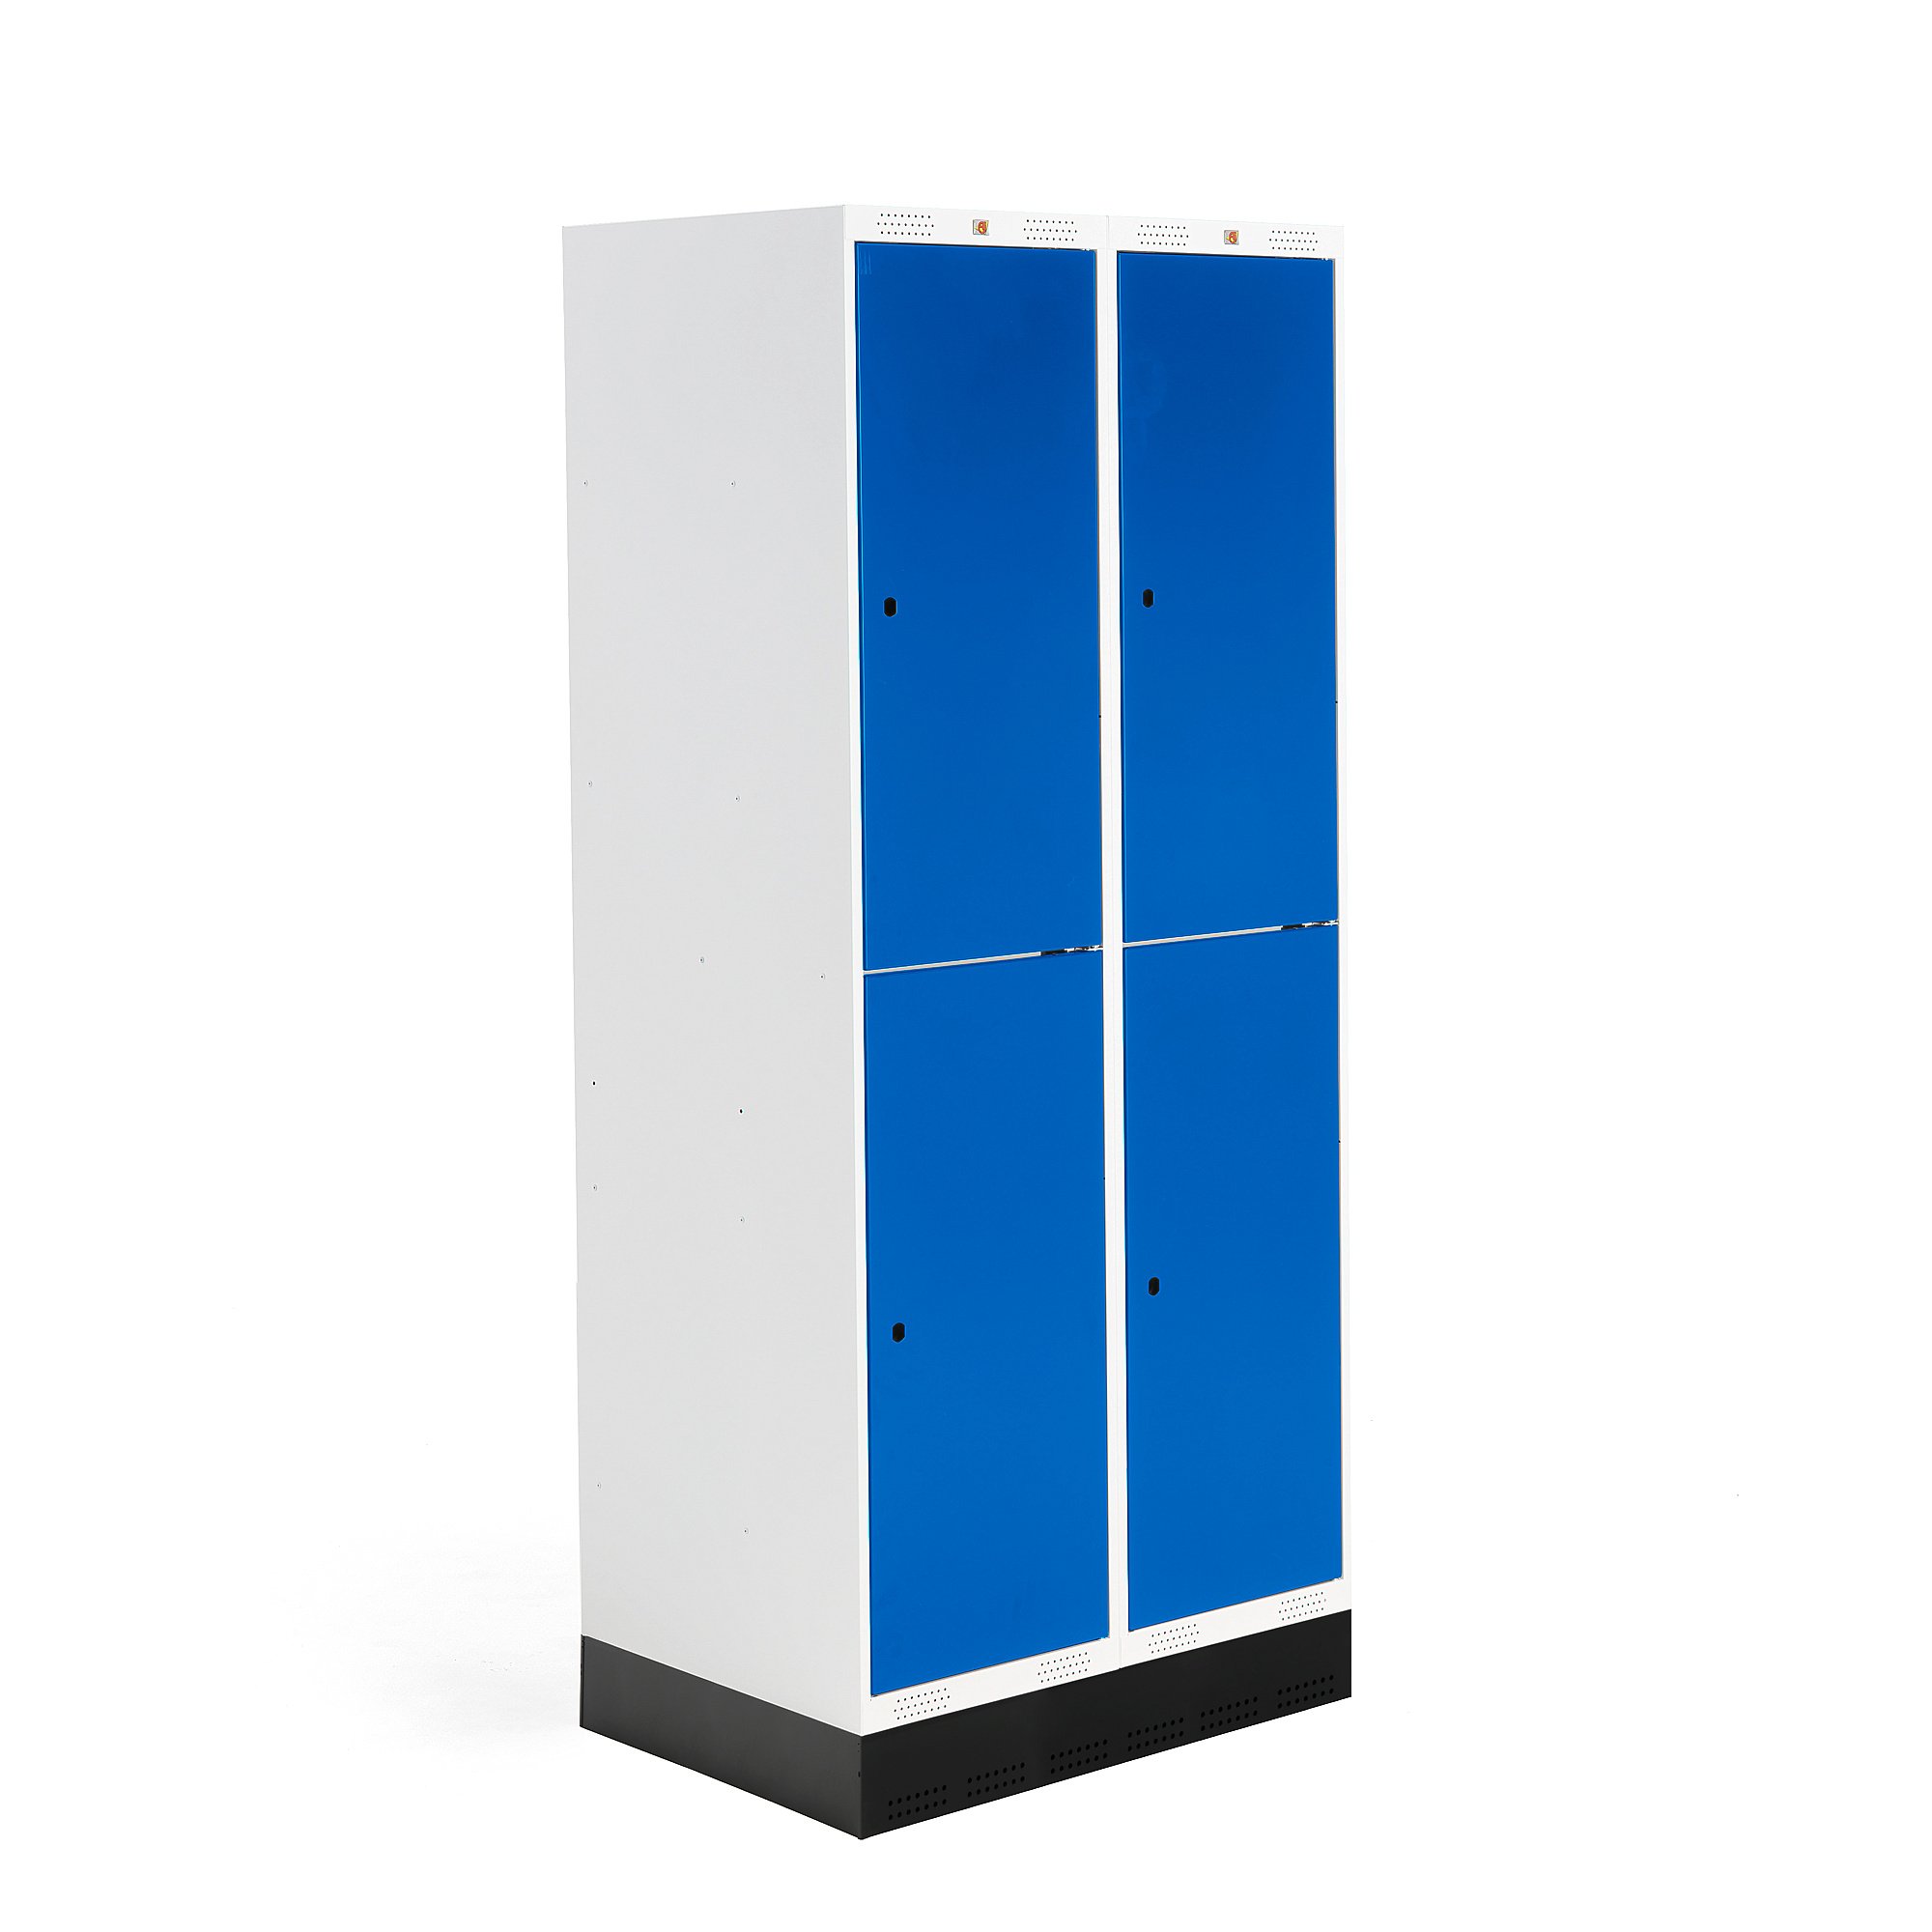 Šatní skříňka ROZ, 2 sekce, 4 boxy, se soklem, 1890x800x550 mm, modrá